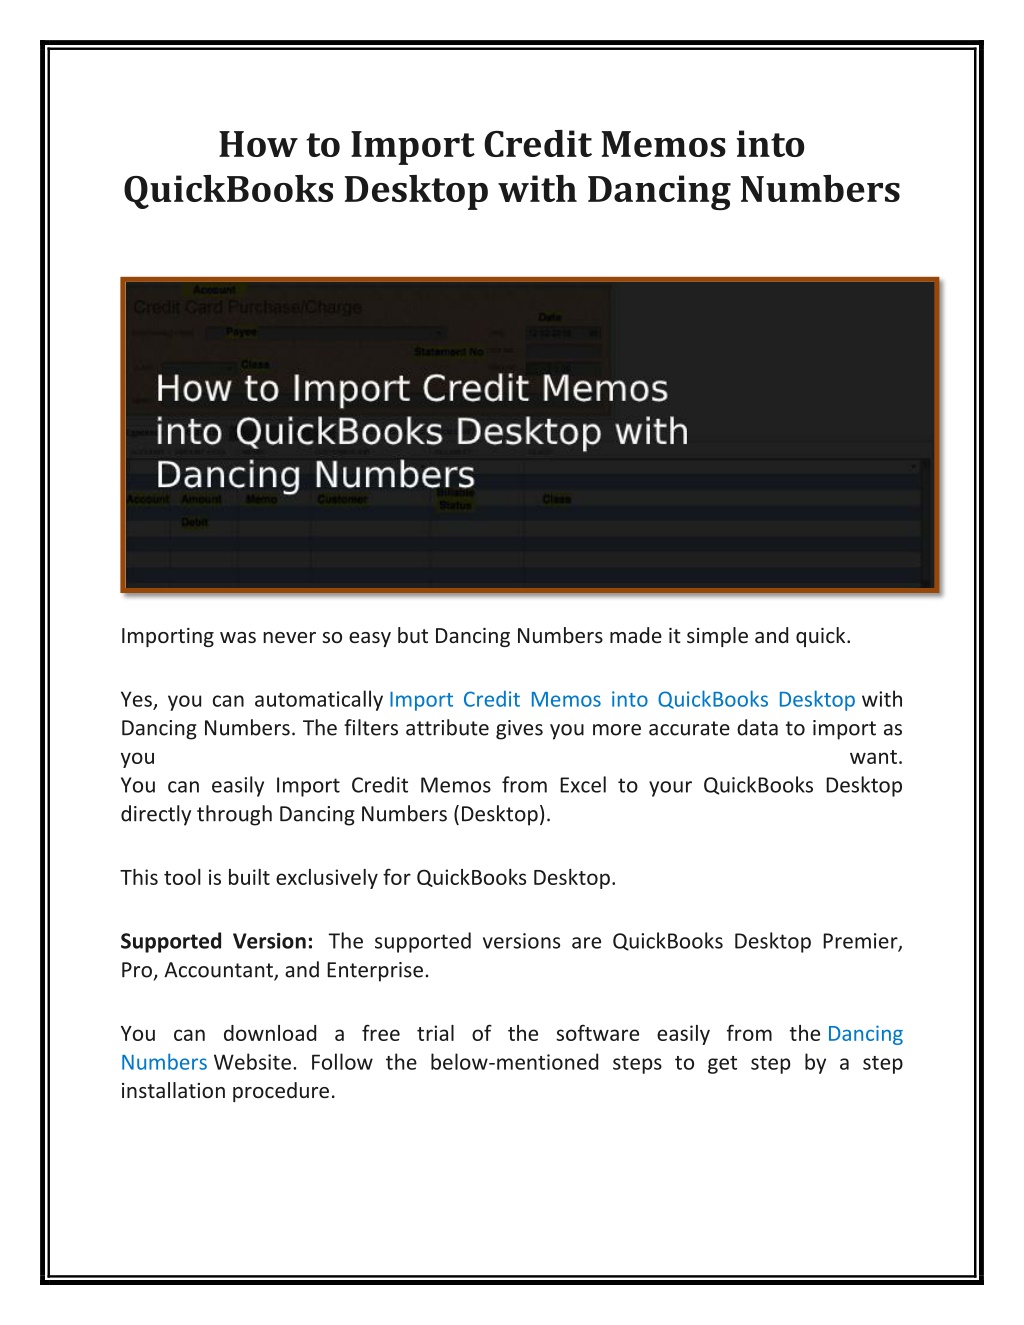 quickbooks report for open credit memos